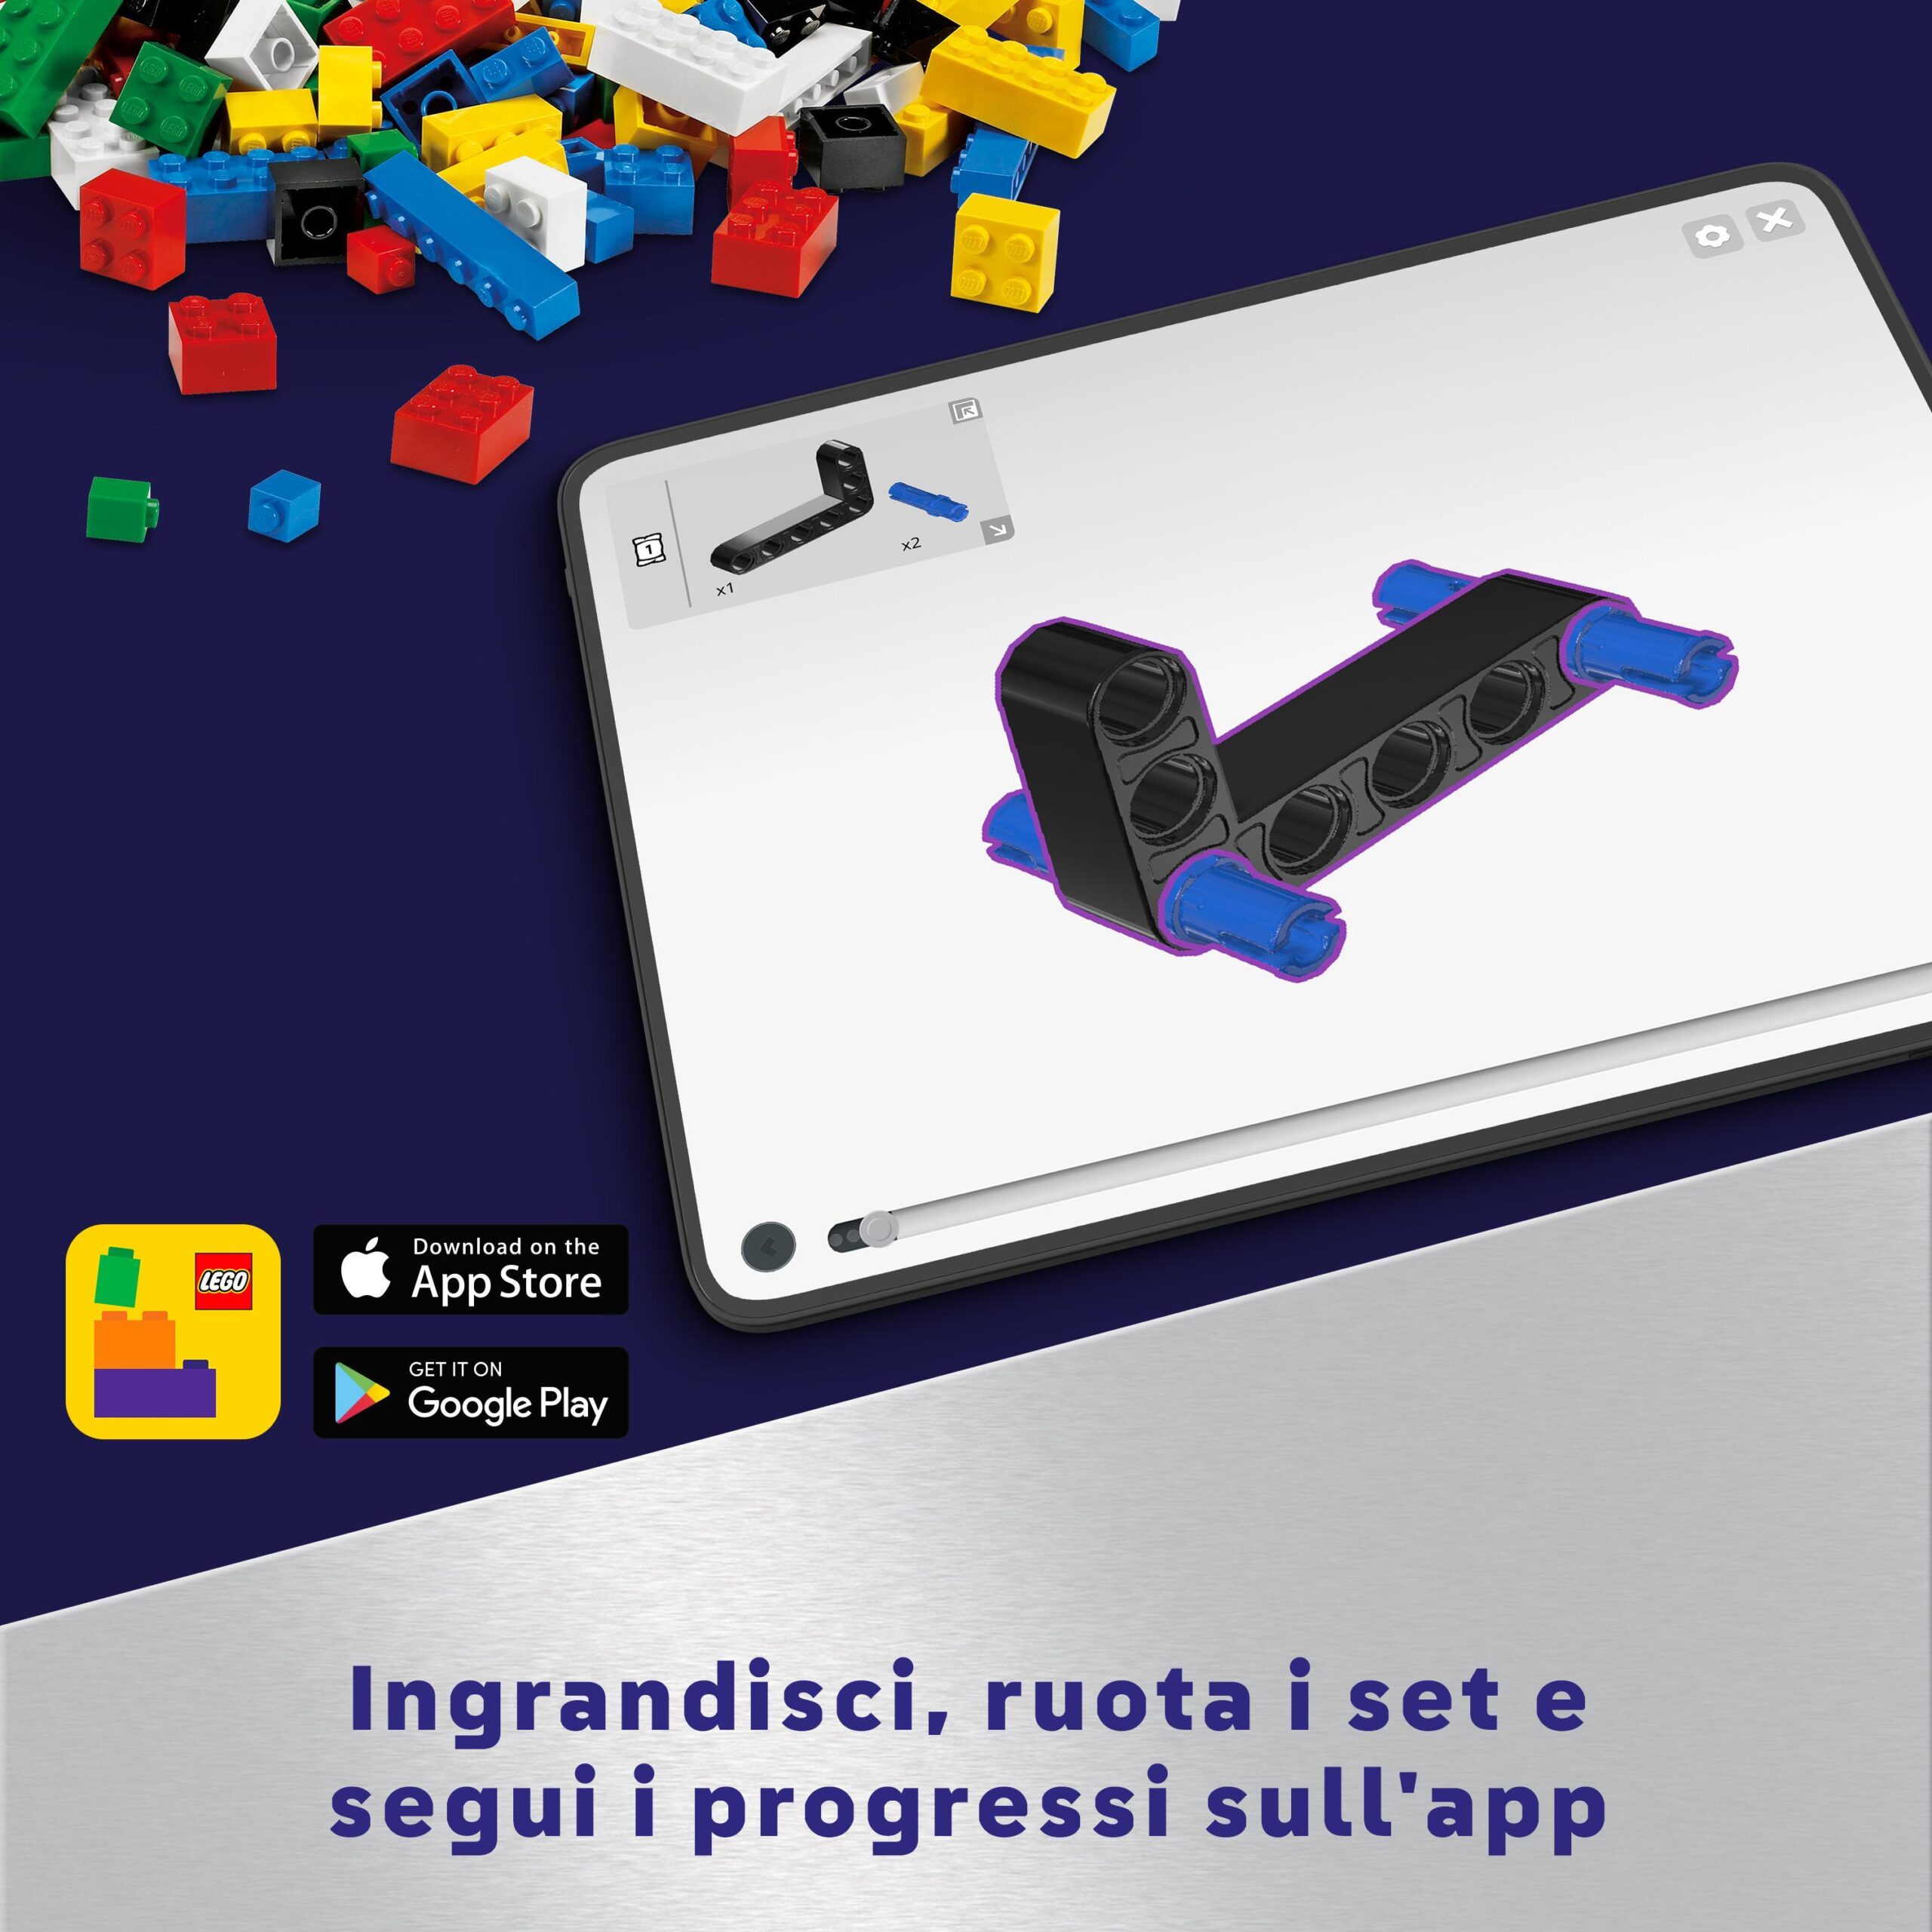 Lego technic 42181 astronave heavy cargo vtol lt81, giochi per bambini 10+, aereo spaziele giocattolo da costruire con funzioni - LEGO TECHNIC